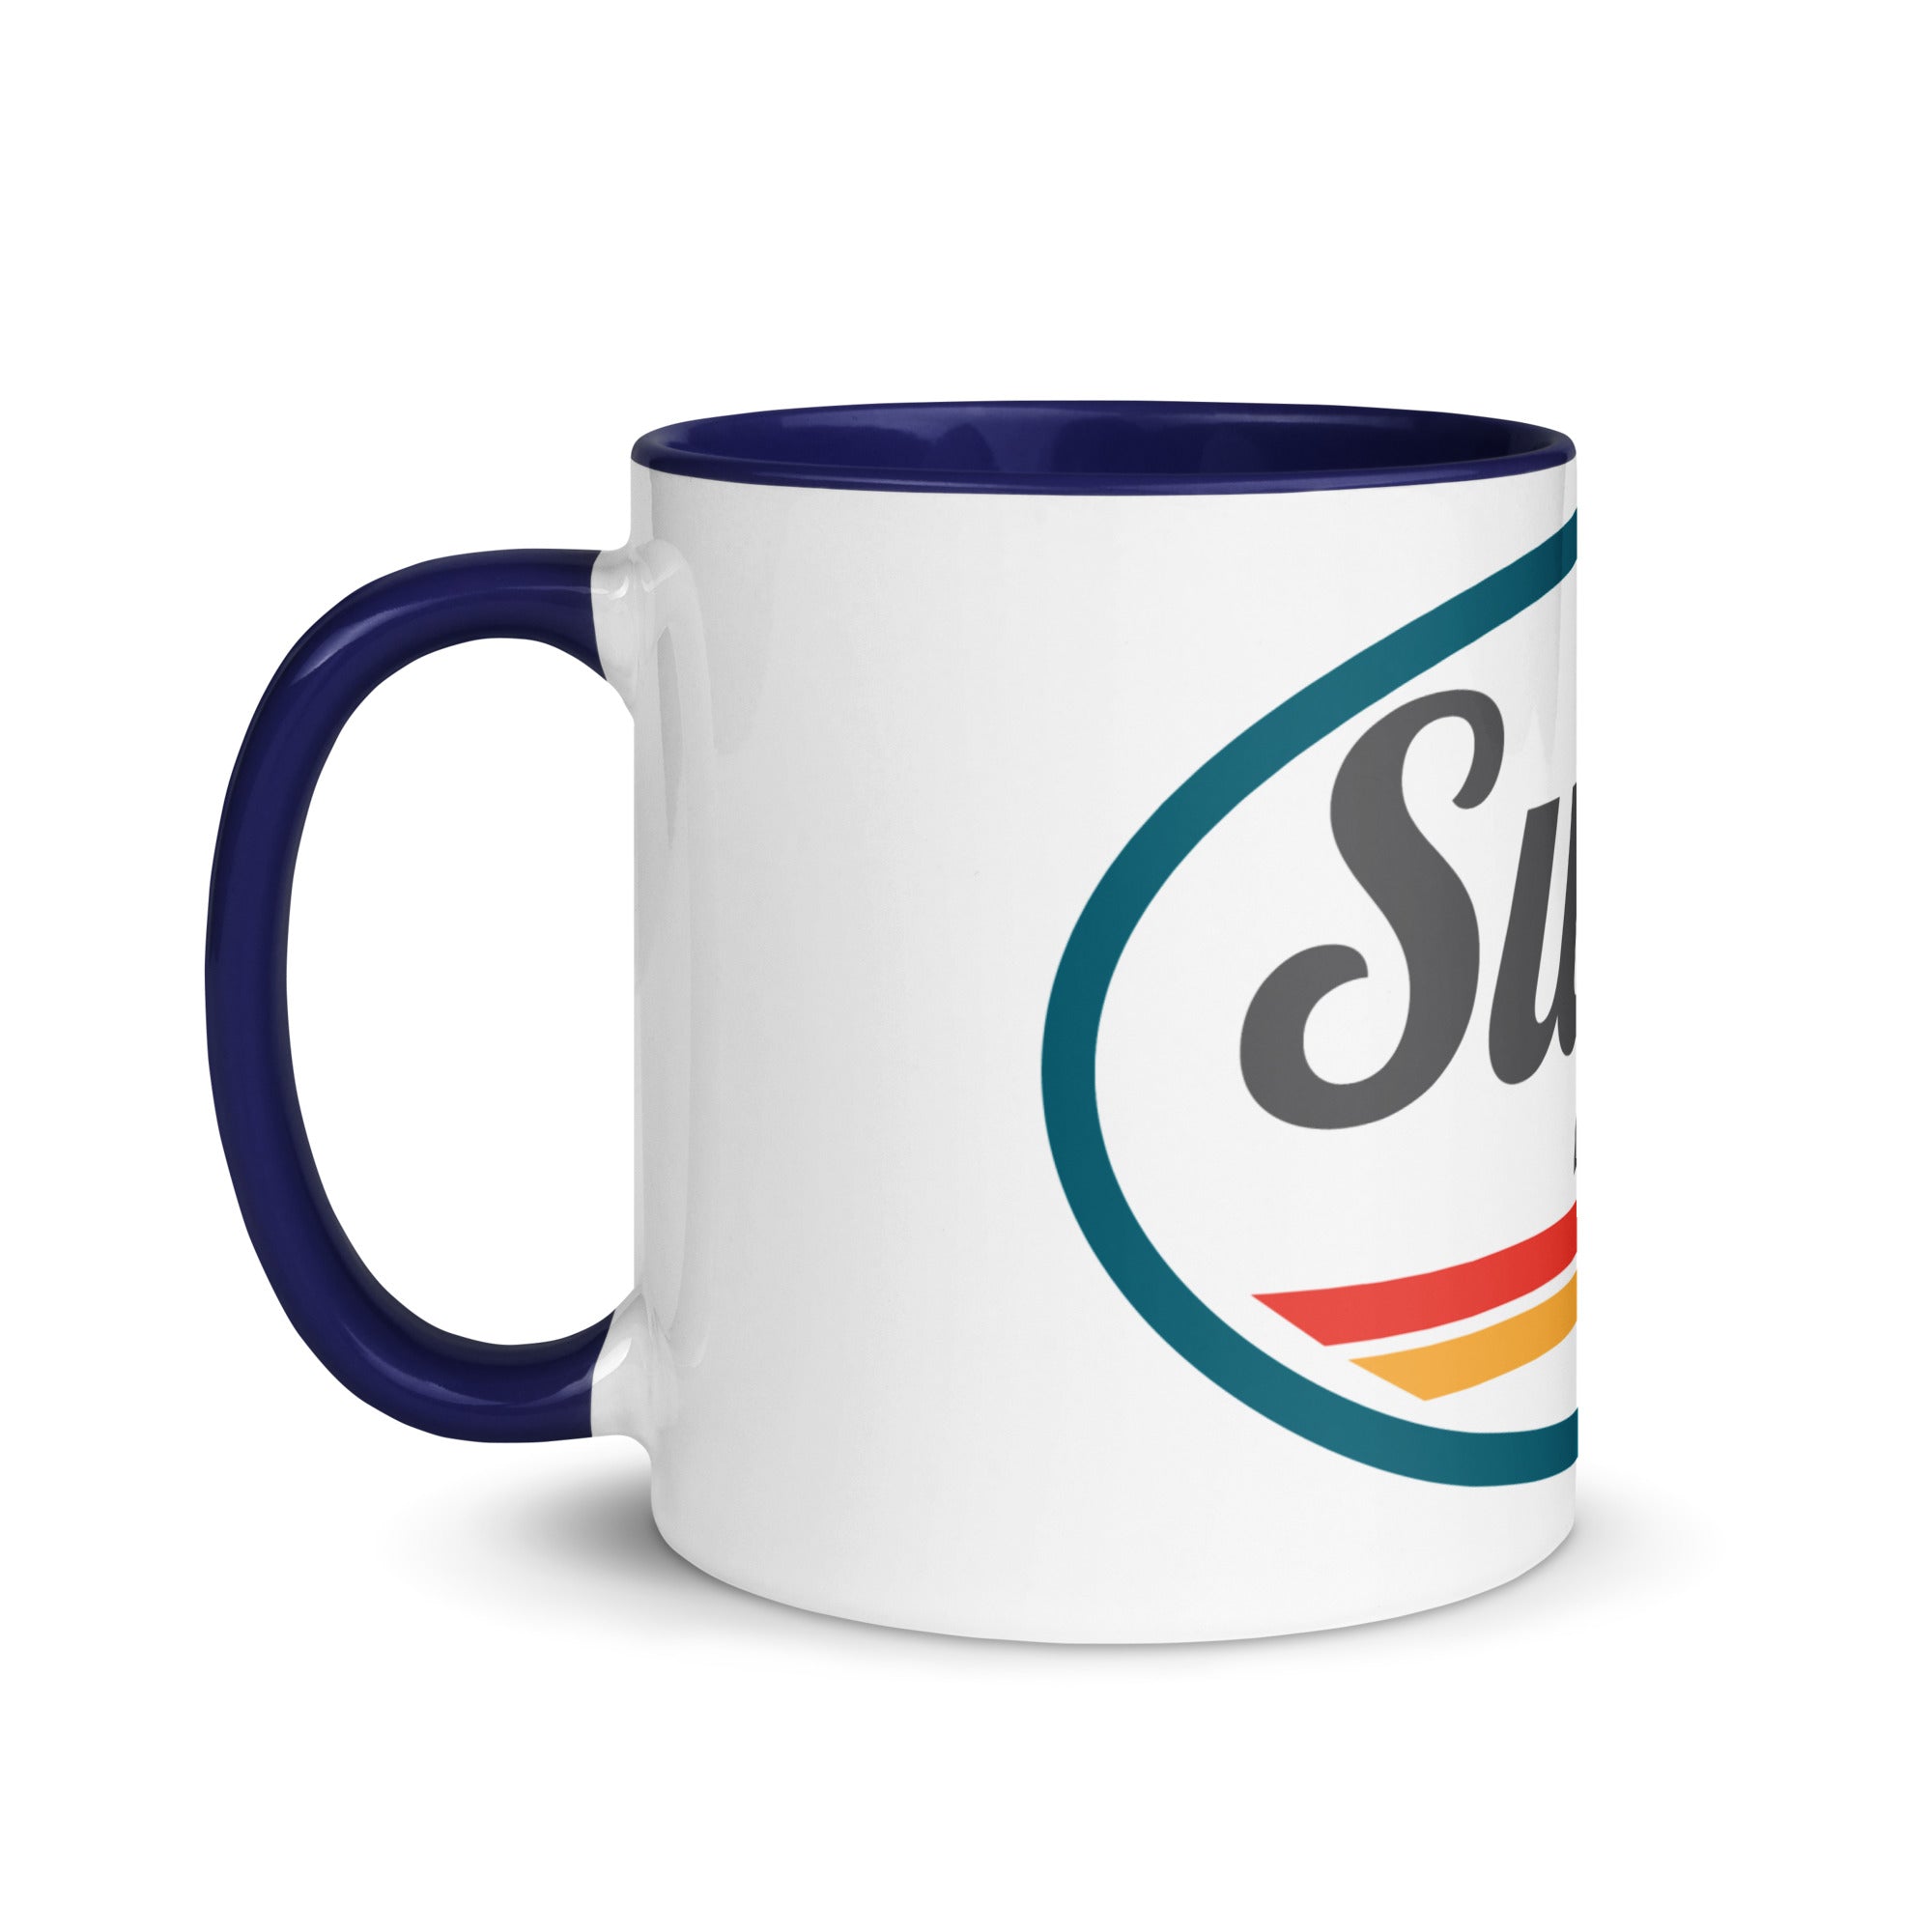 Super55 Mug with Color Inside